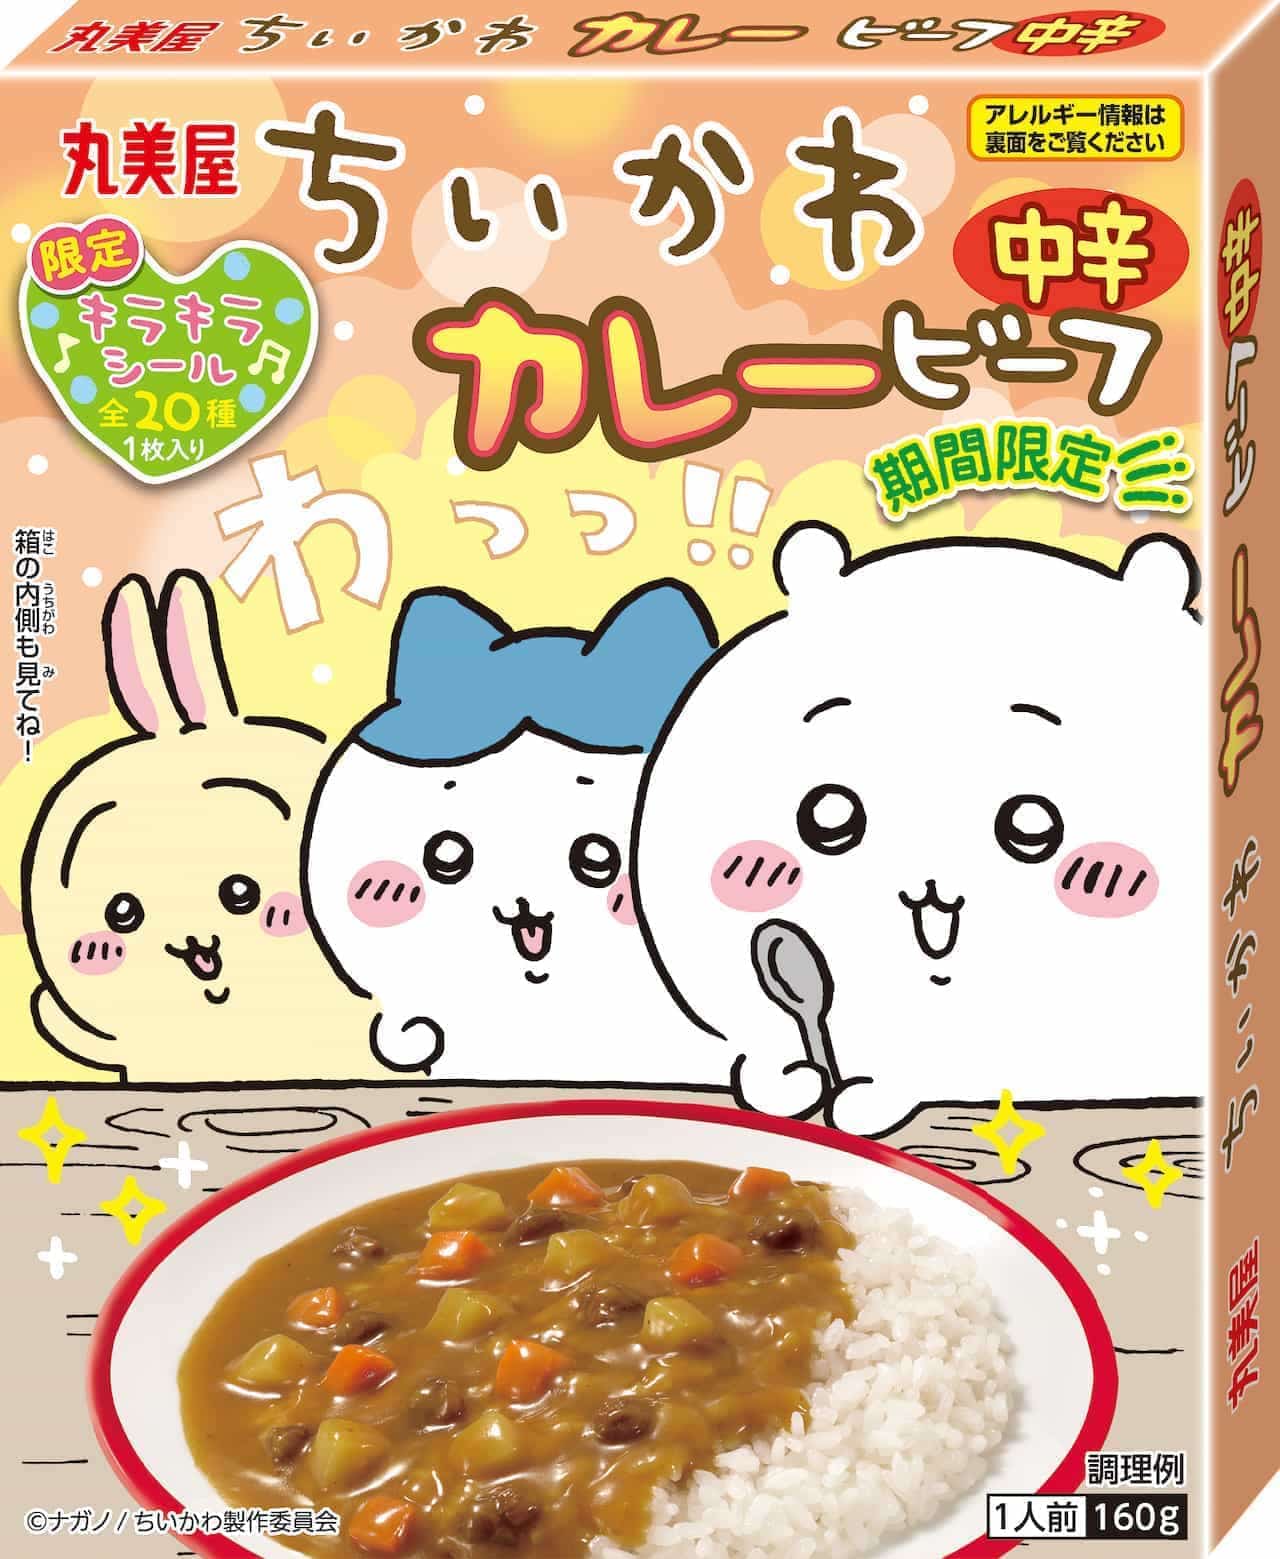 Marumiya Food Industries "Limited Time Cheeky Furikake [Tamago & Tarako]".